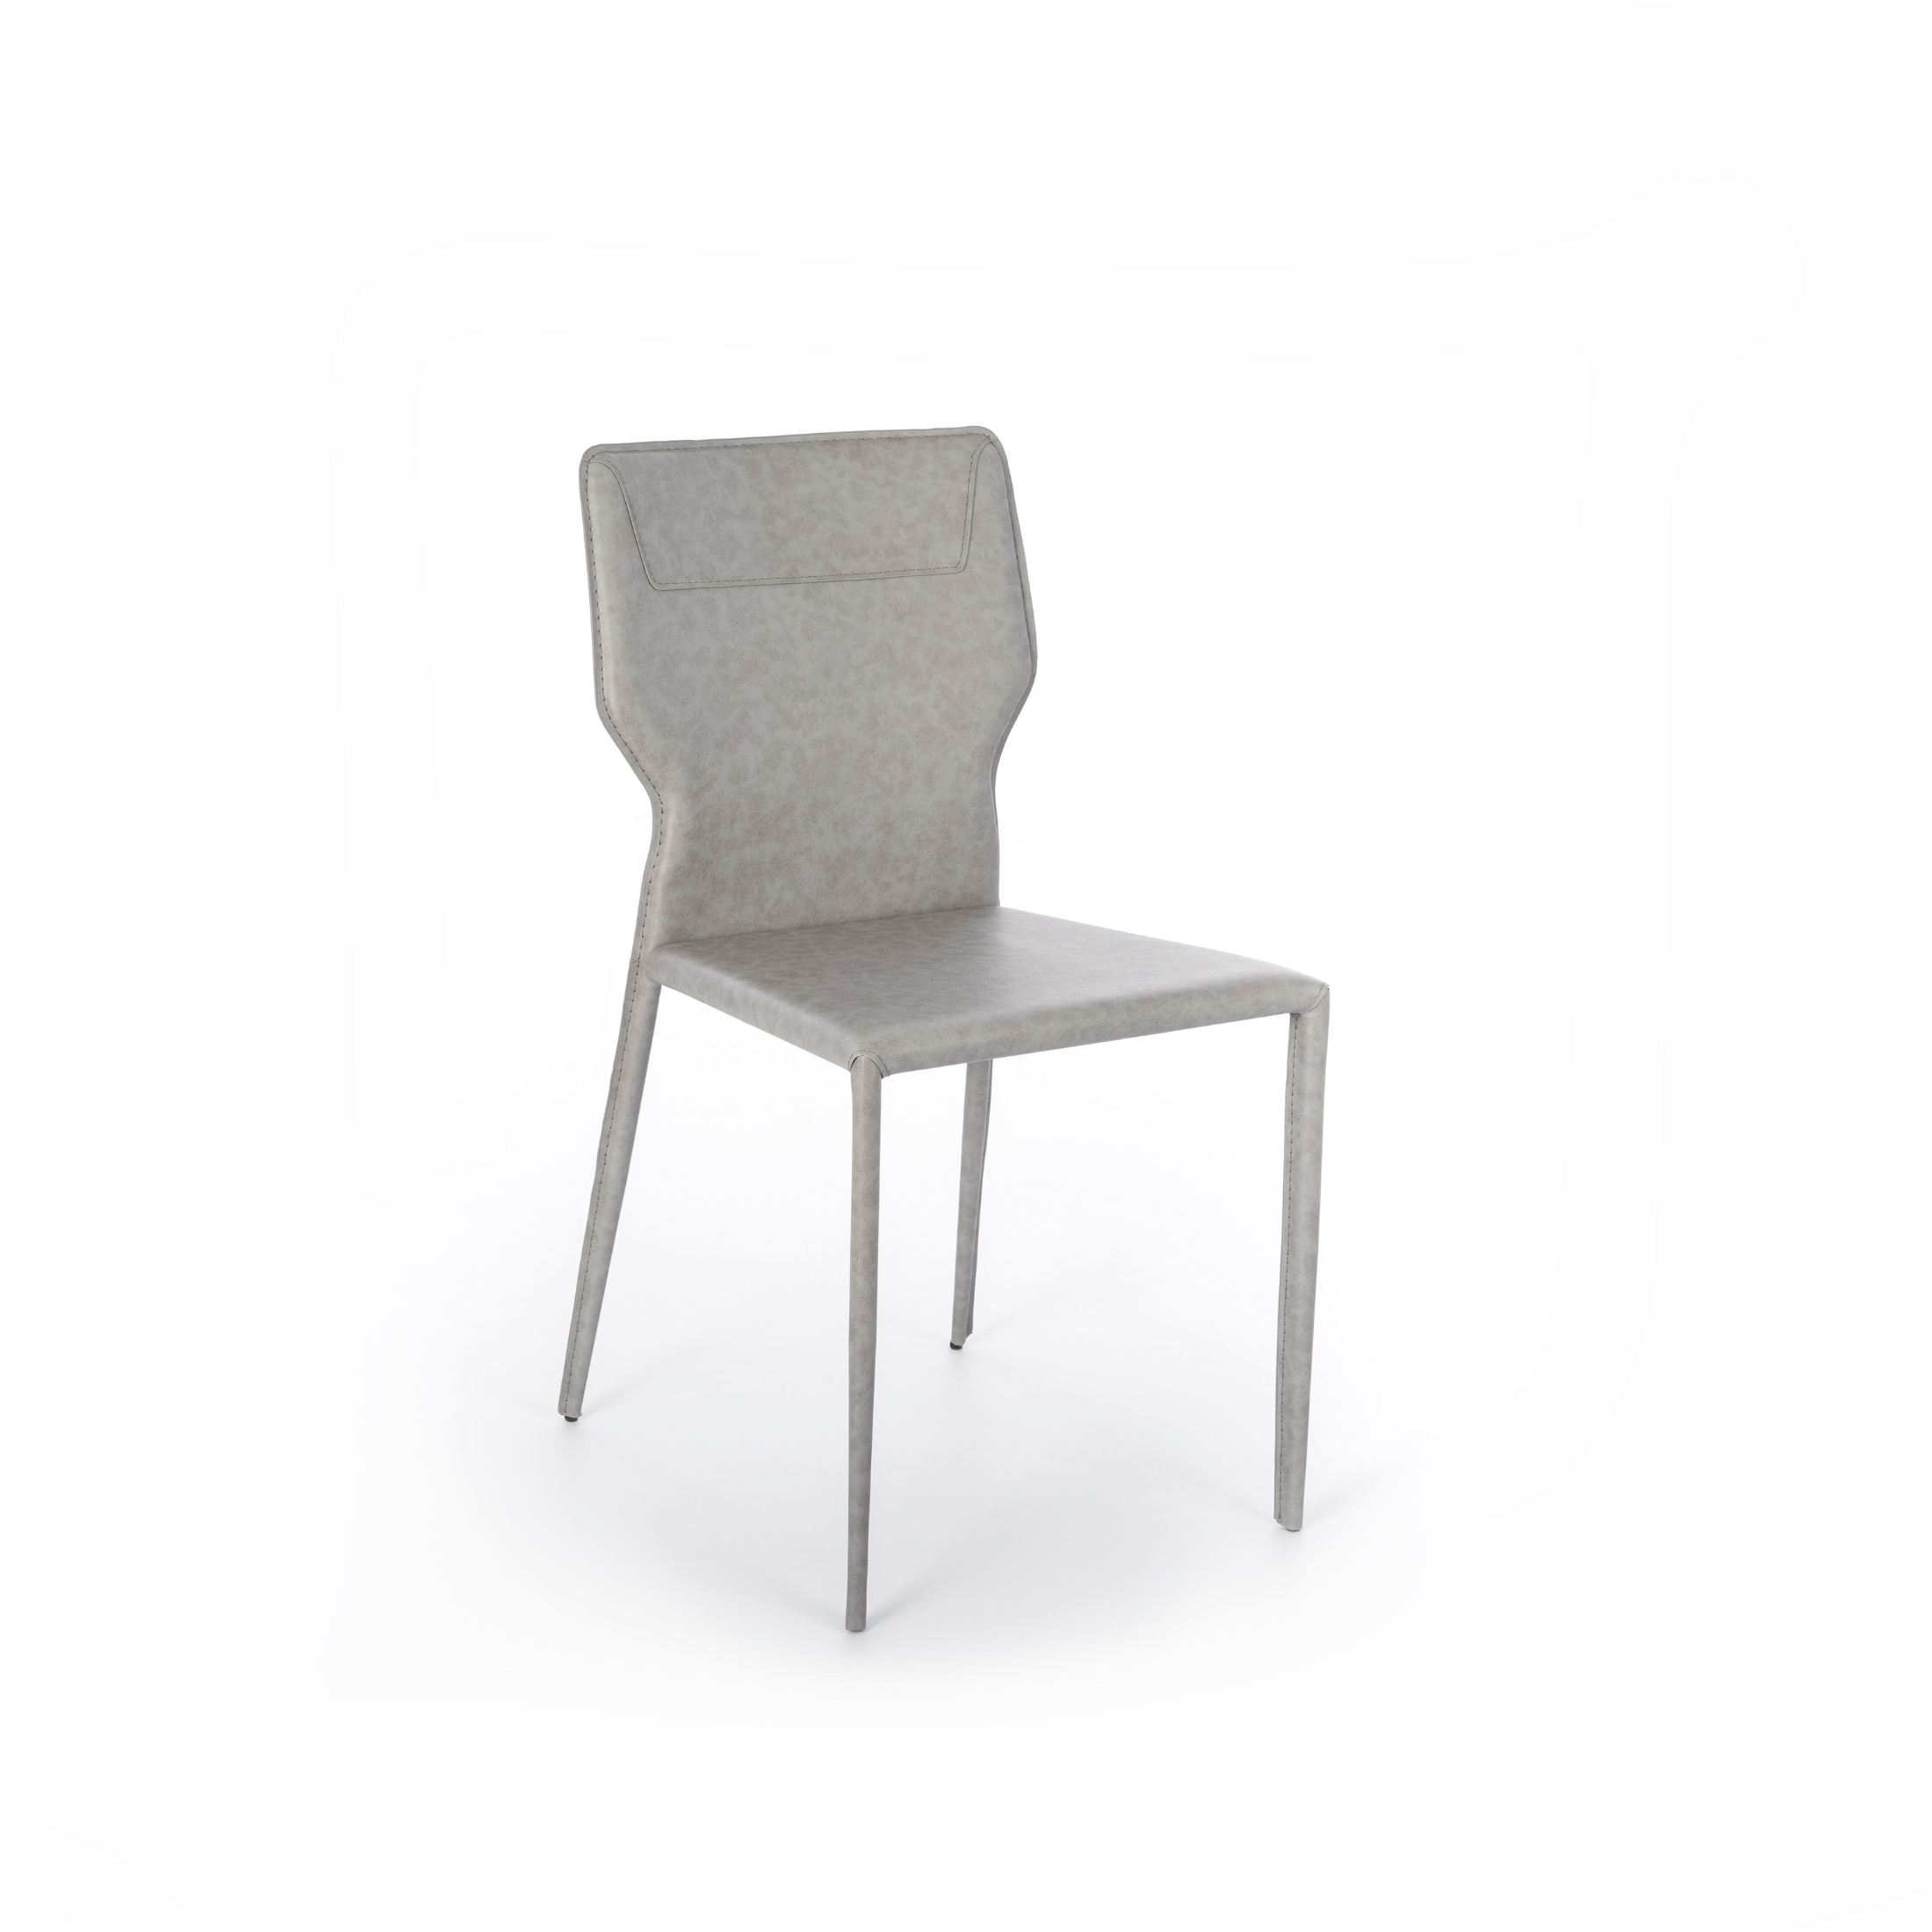 Set sedie in similcuoio "Kim" moderne con gambe in metallo cm 44x56 86,5h